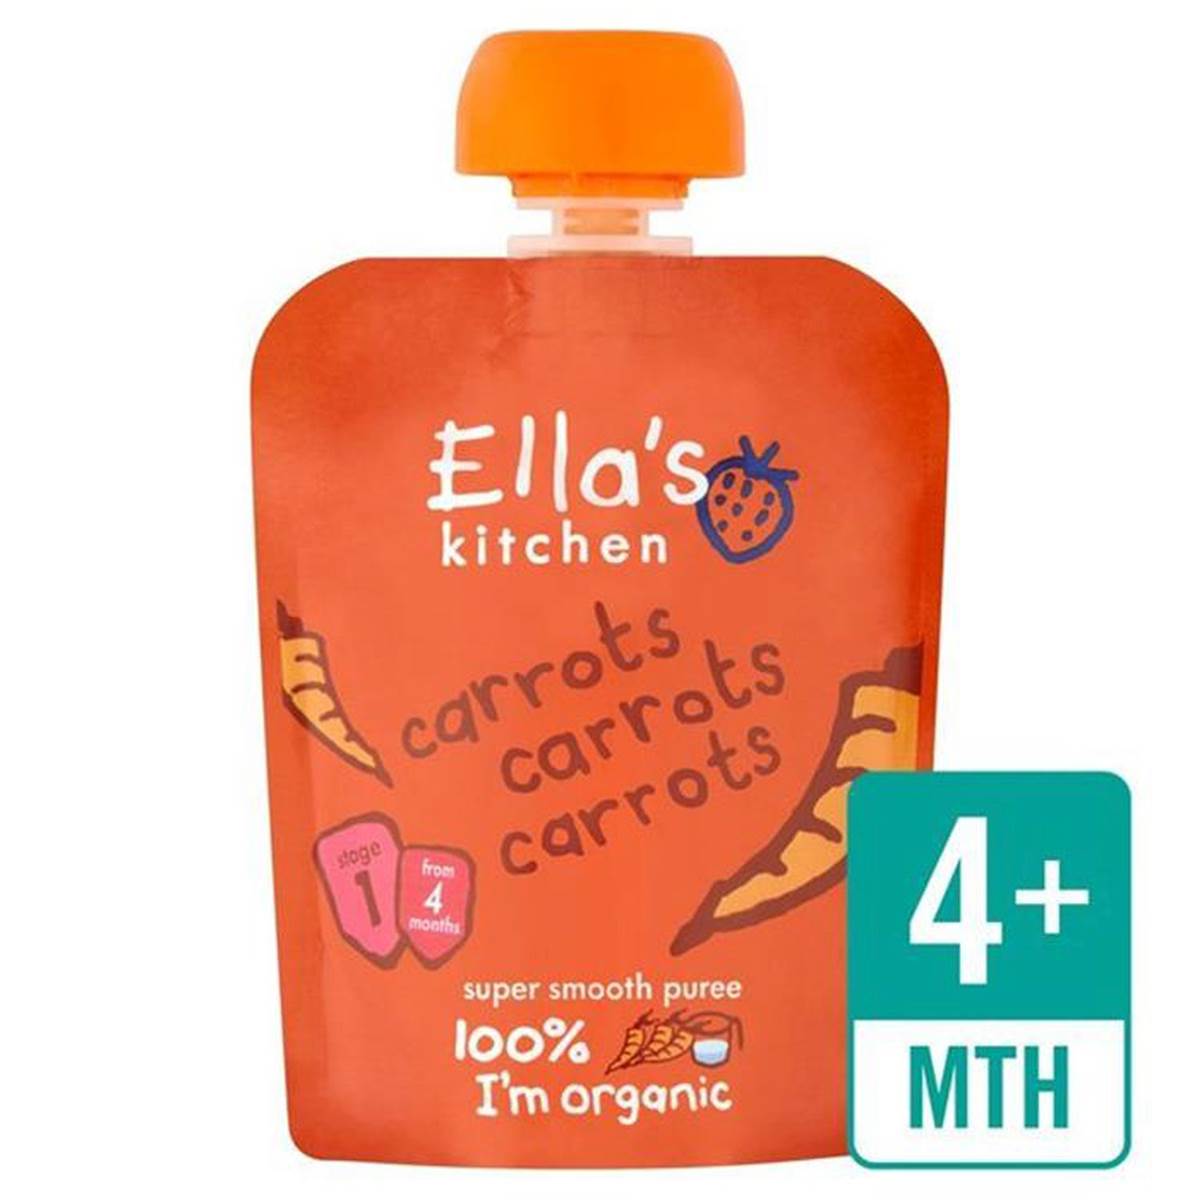 Ellas Kitchen Carrots Carrots Carrots - 70g